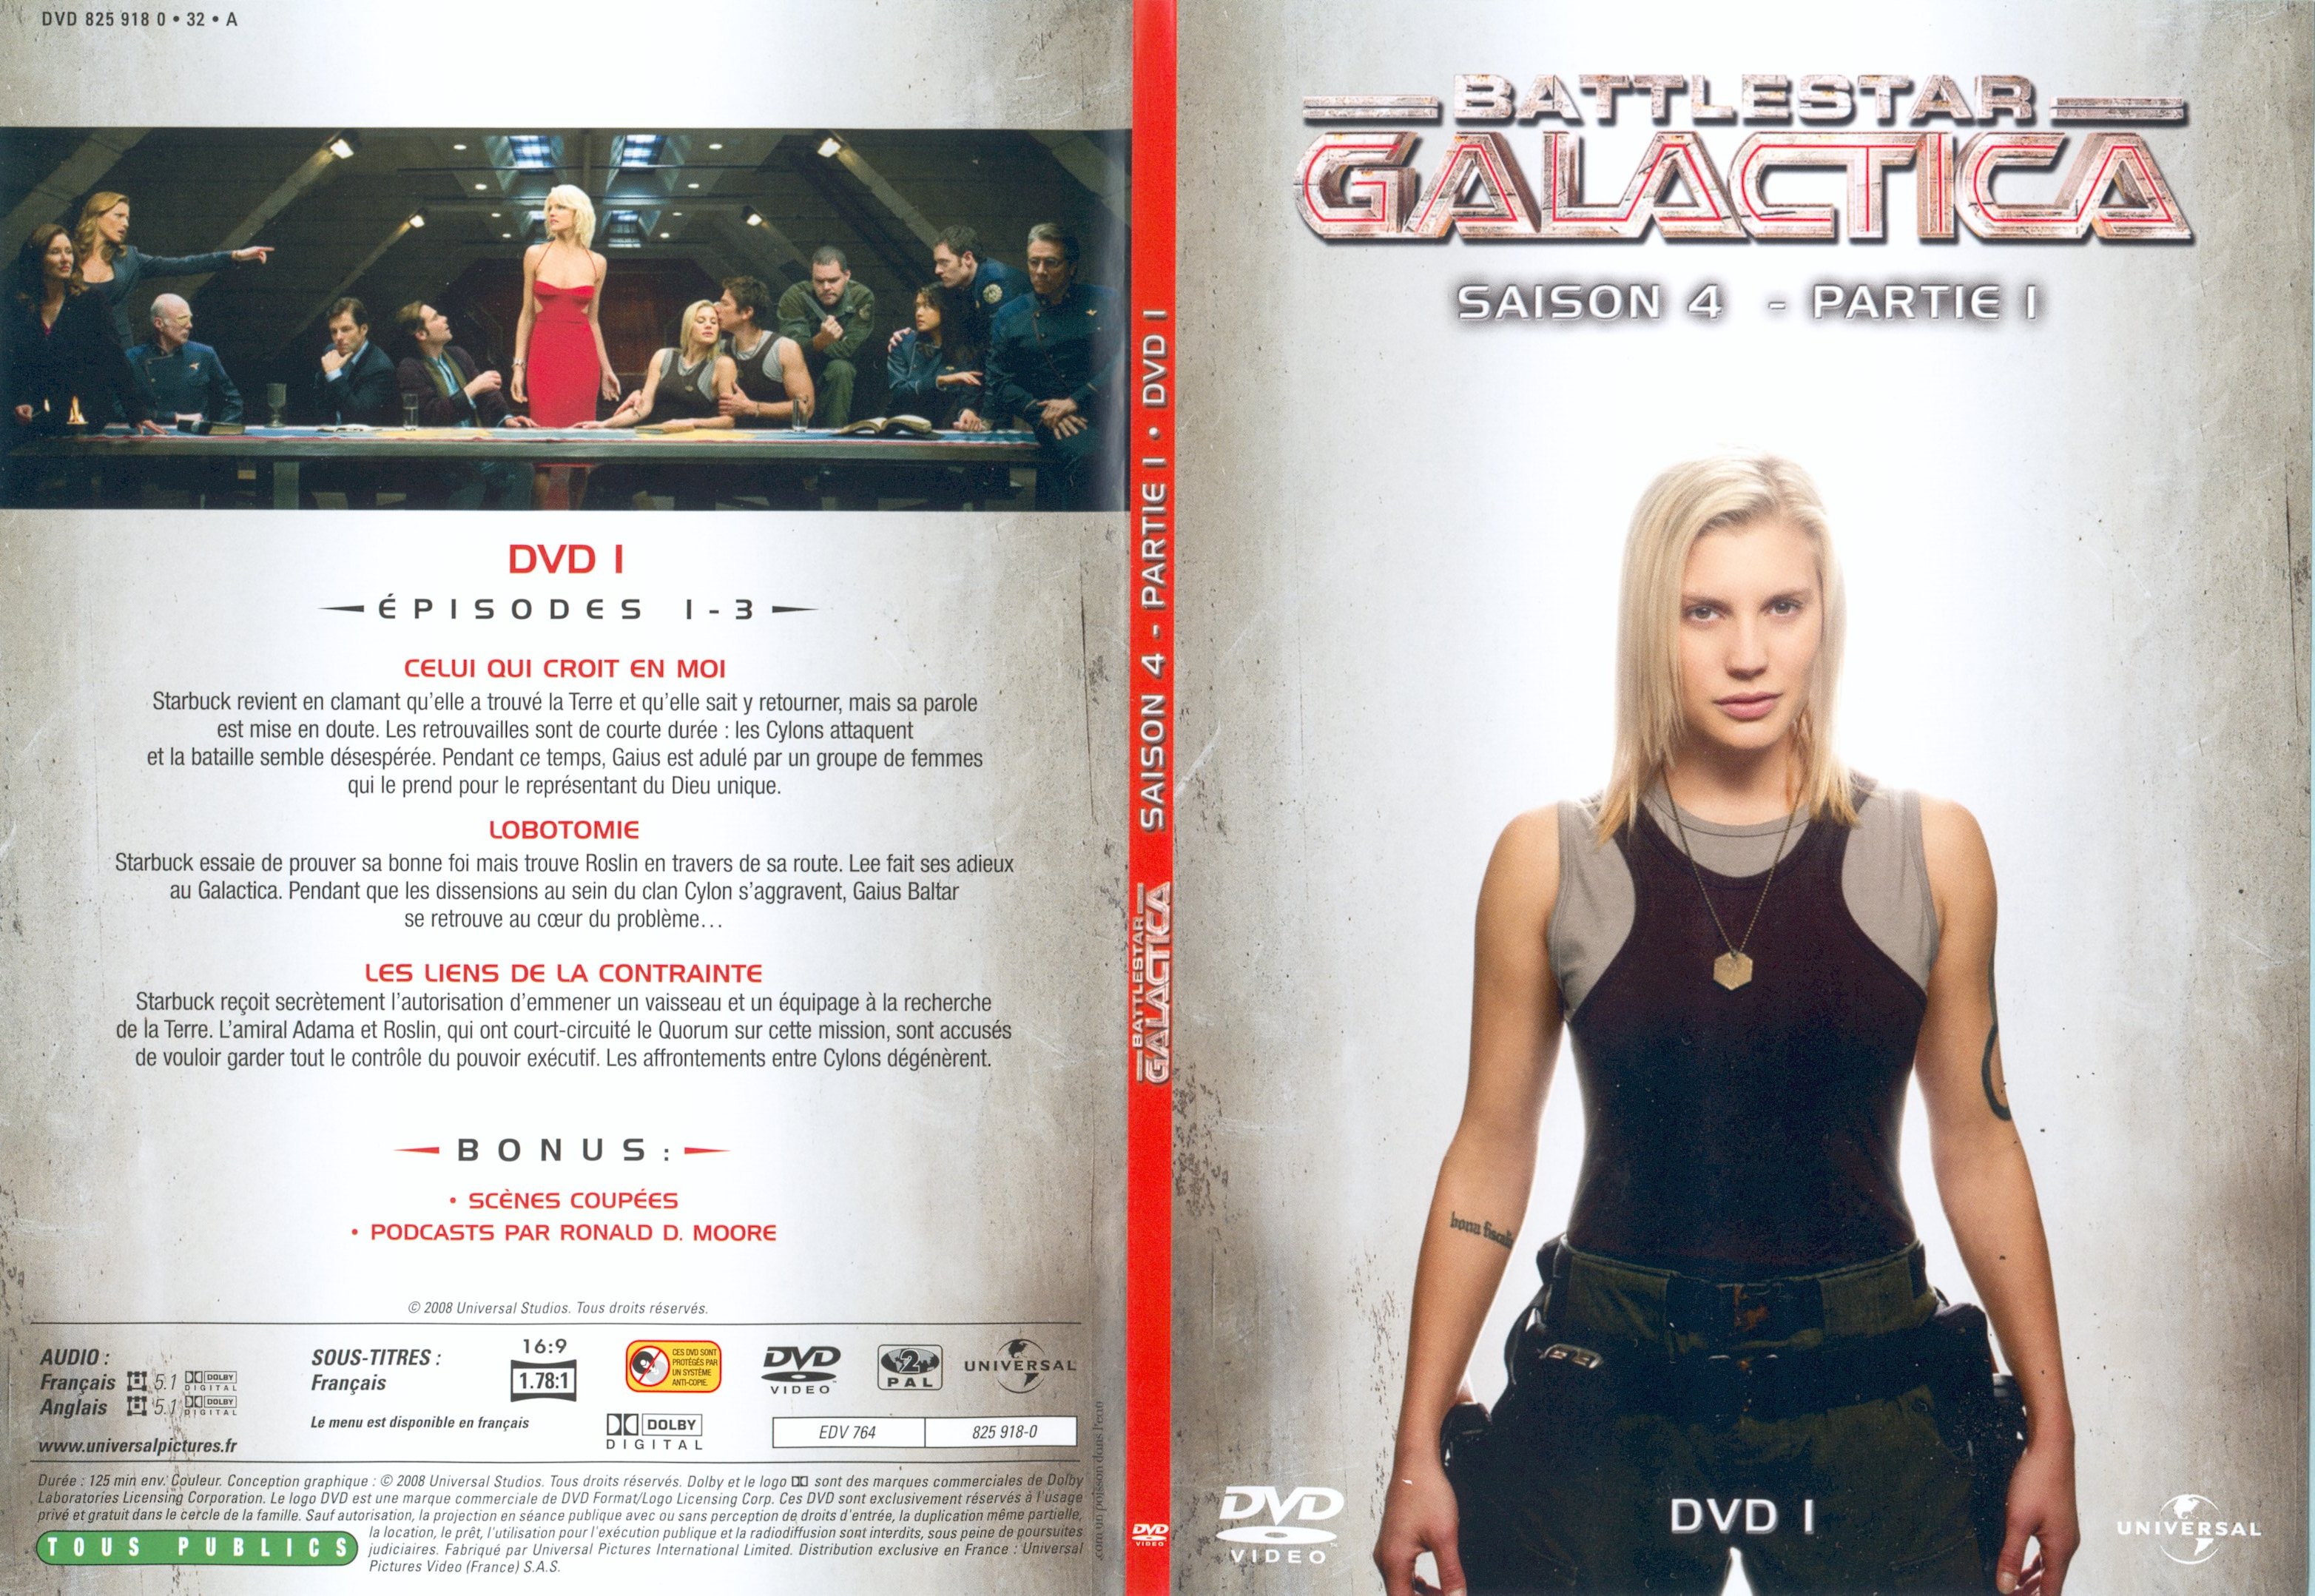 Jaquette DVD Battlestar Galactica Saison 4 partie 1 DVD 1